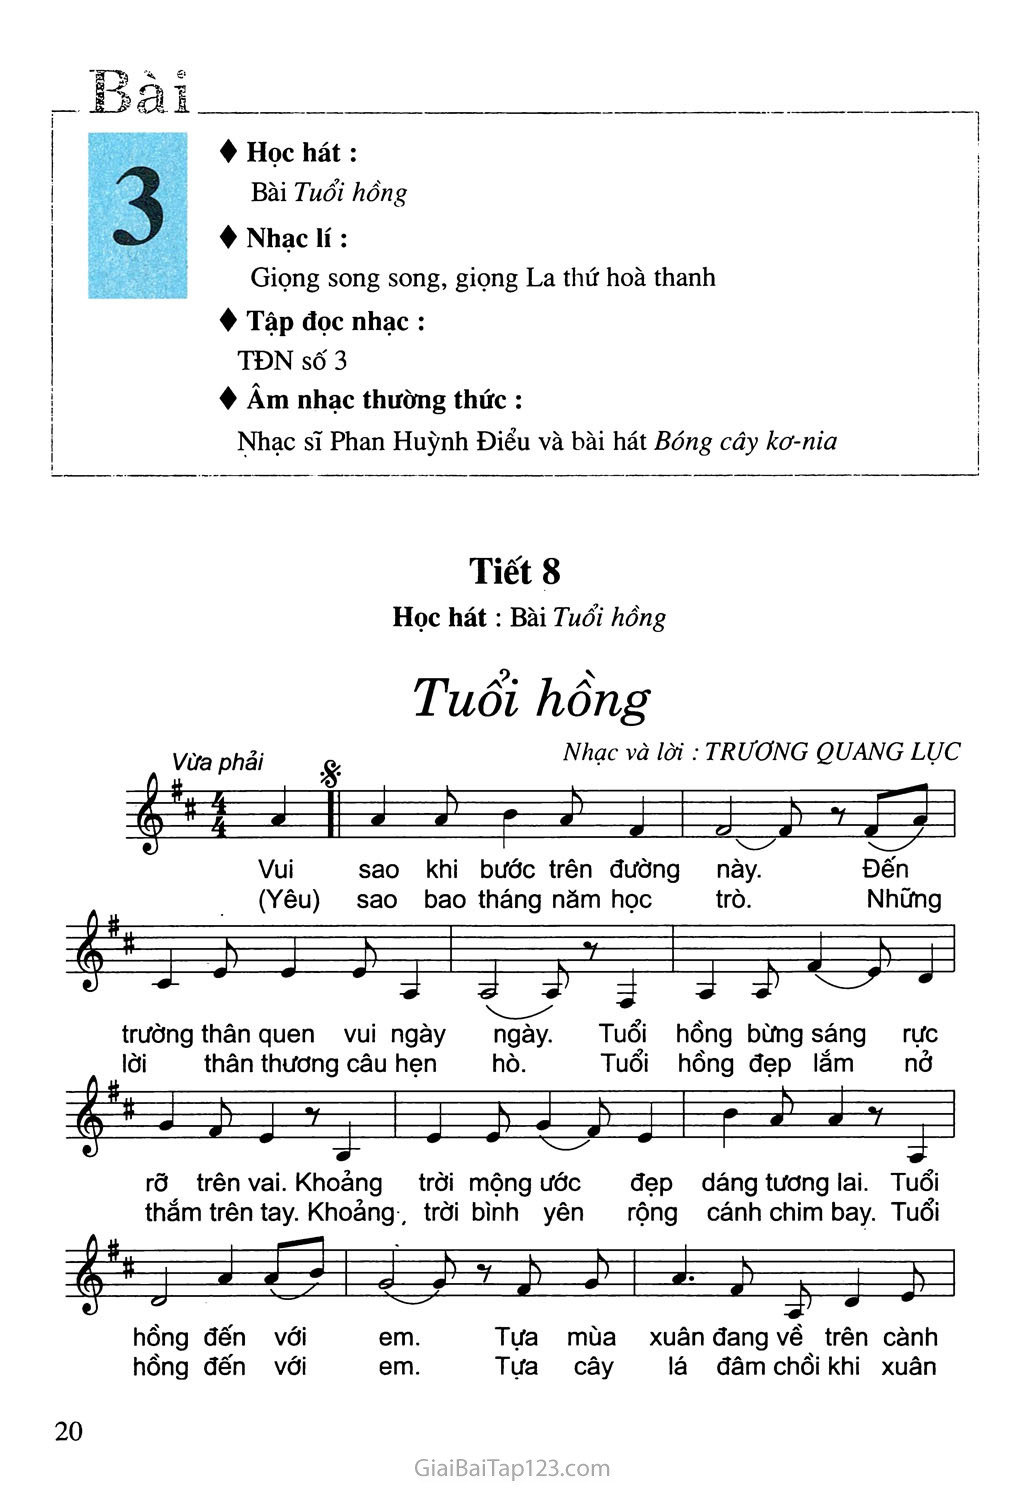 Tiết 8. Học hát: Bài Tuổi hồng trang 1